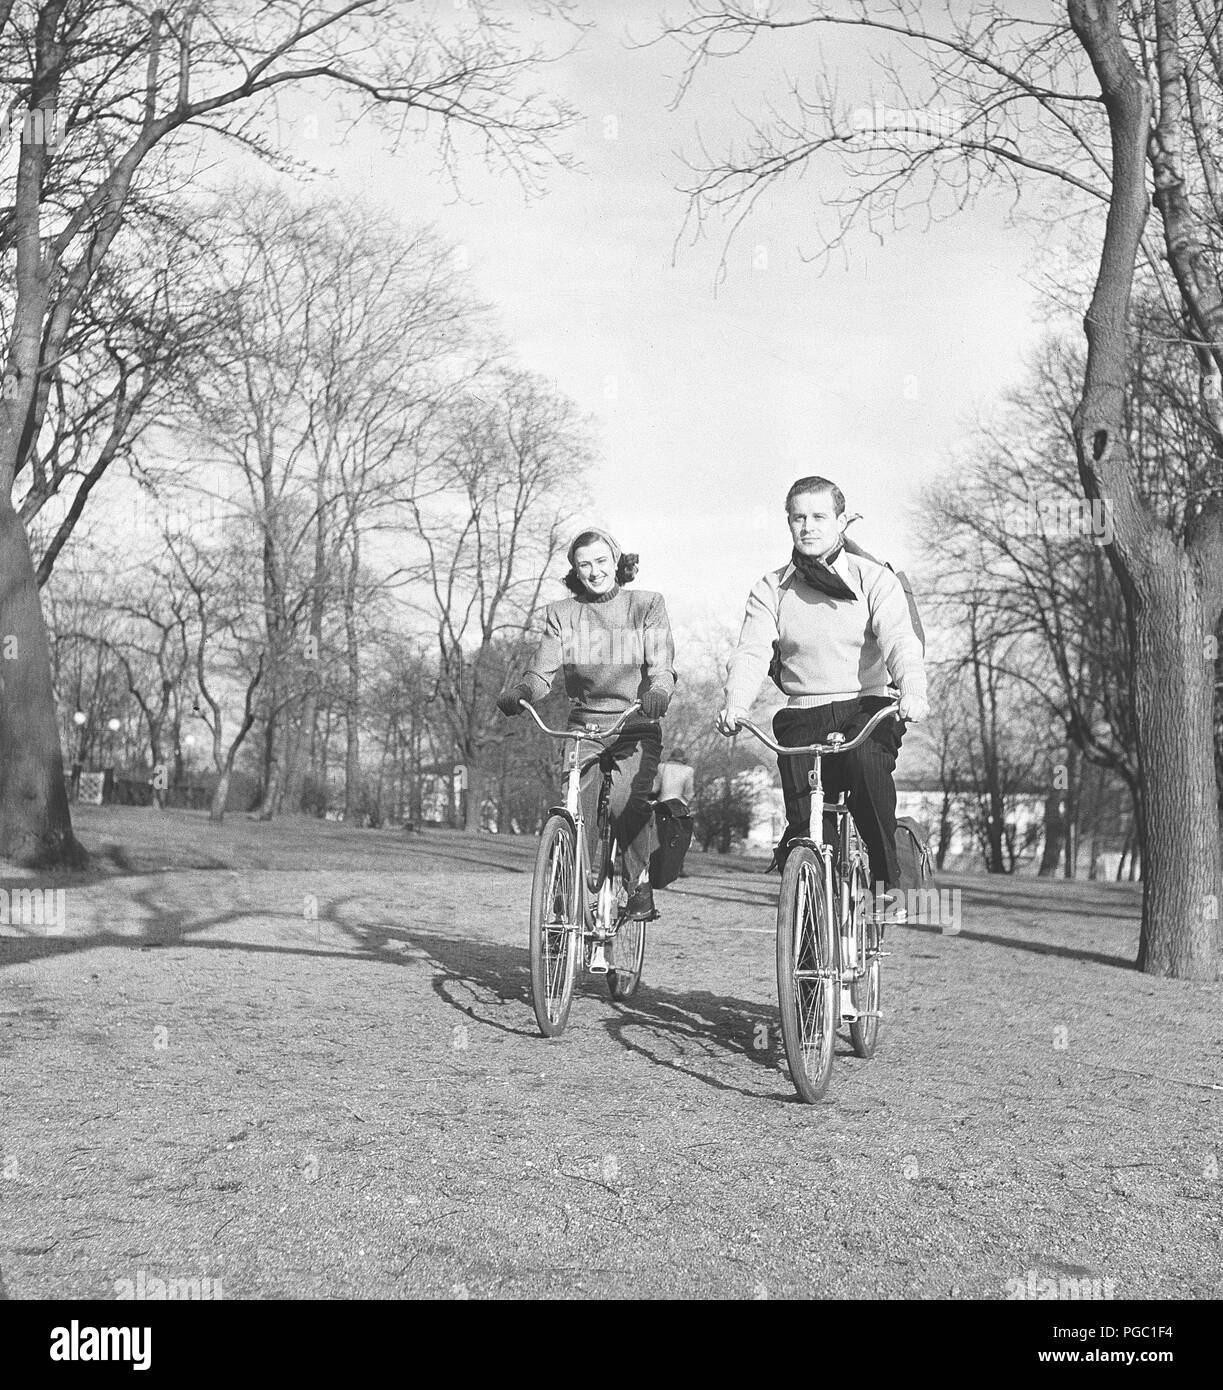 1940s giovane sulle biciclette. Una giovane coppia è cavalcare le loro biciclette su una soleggiata giornata di primavera. Essi hanno pratiche buste attaccata alla rastrelliera delle biciclette in cui essi potrebbero trasportare il picnic food. La Svezia 1947. Foto Kristoffersson AB11-11 Foto Stock